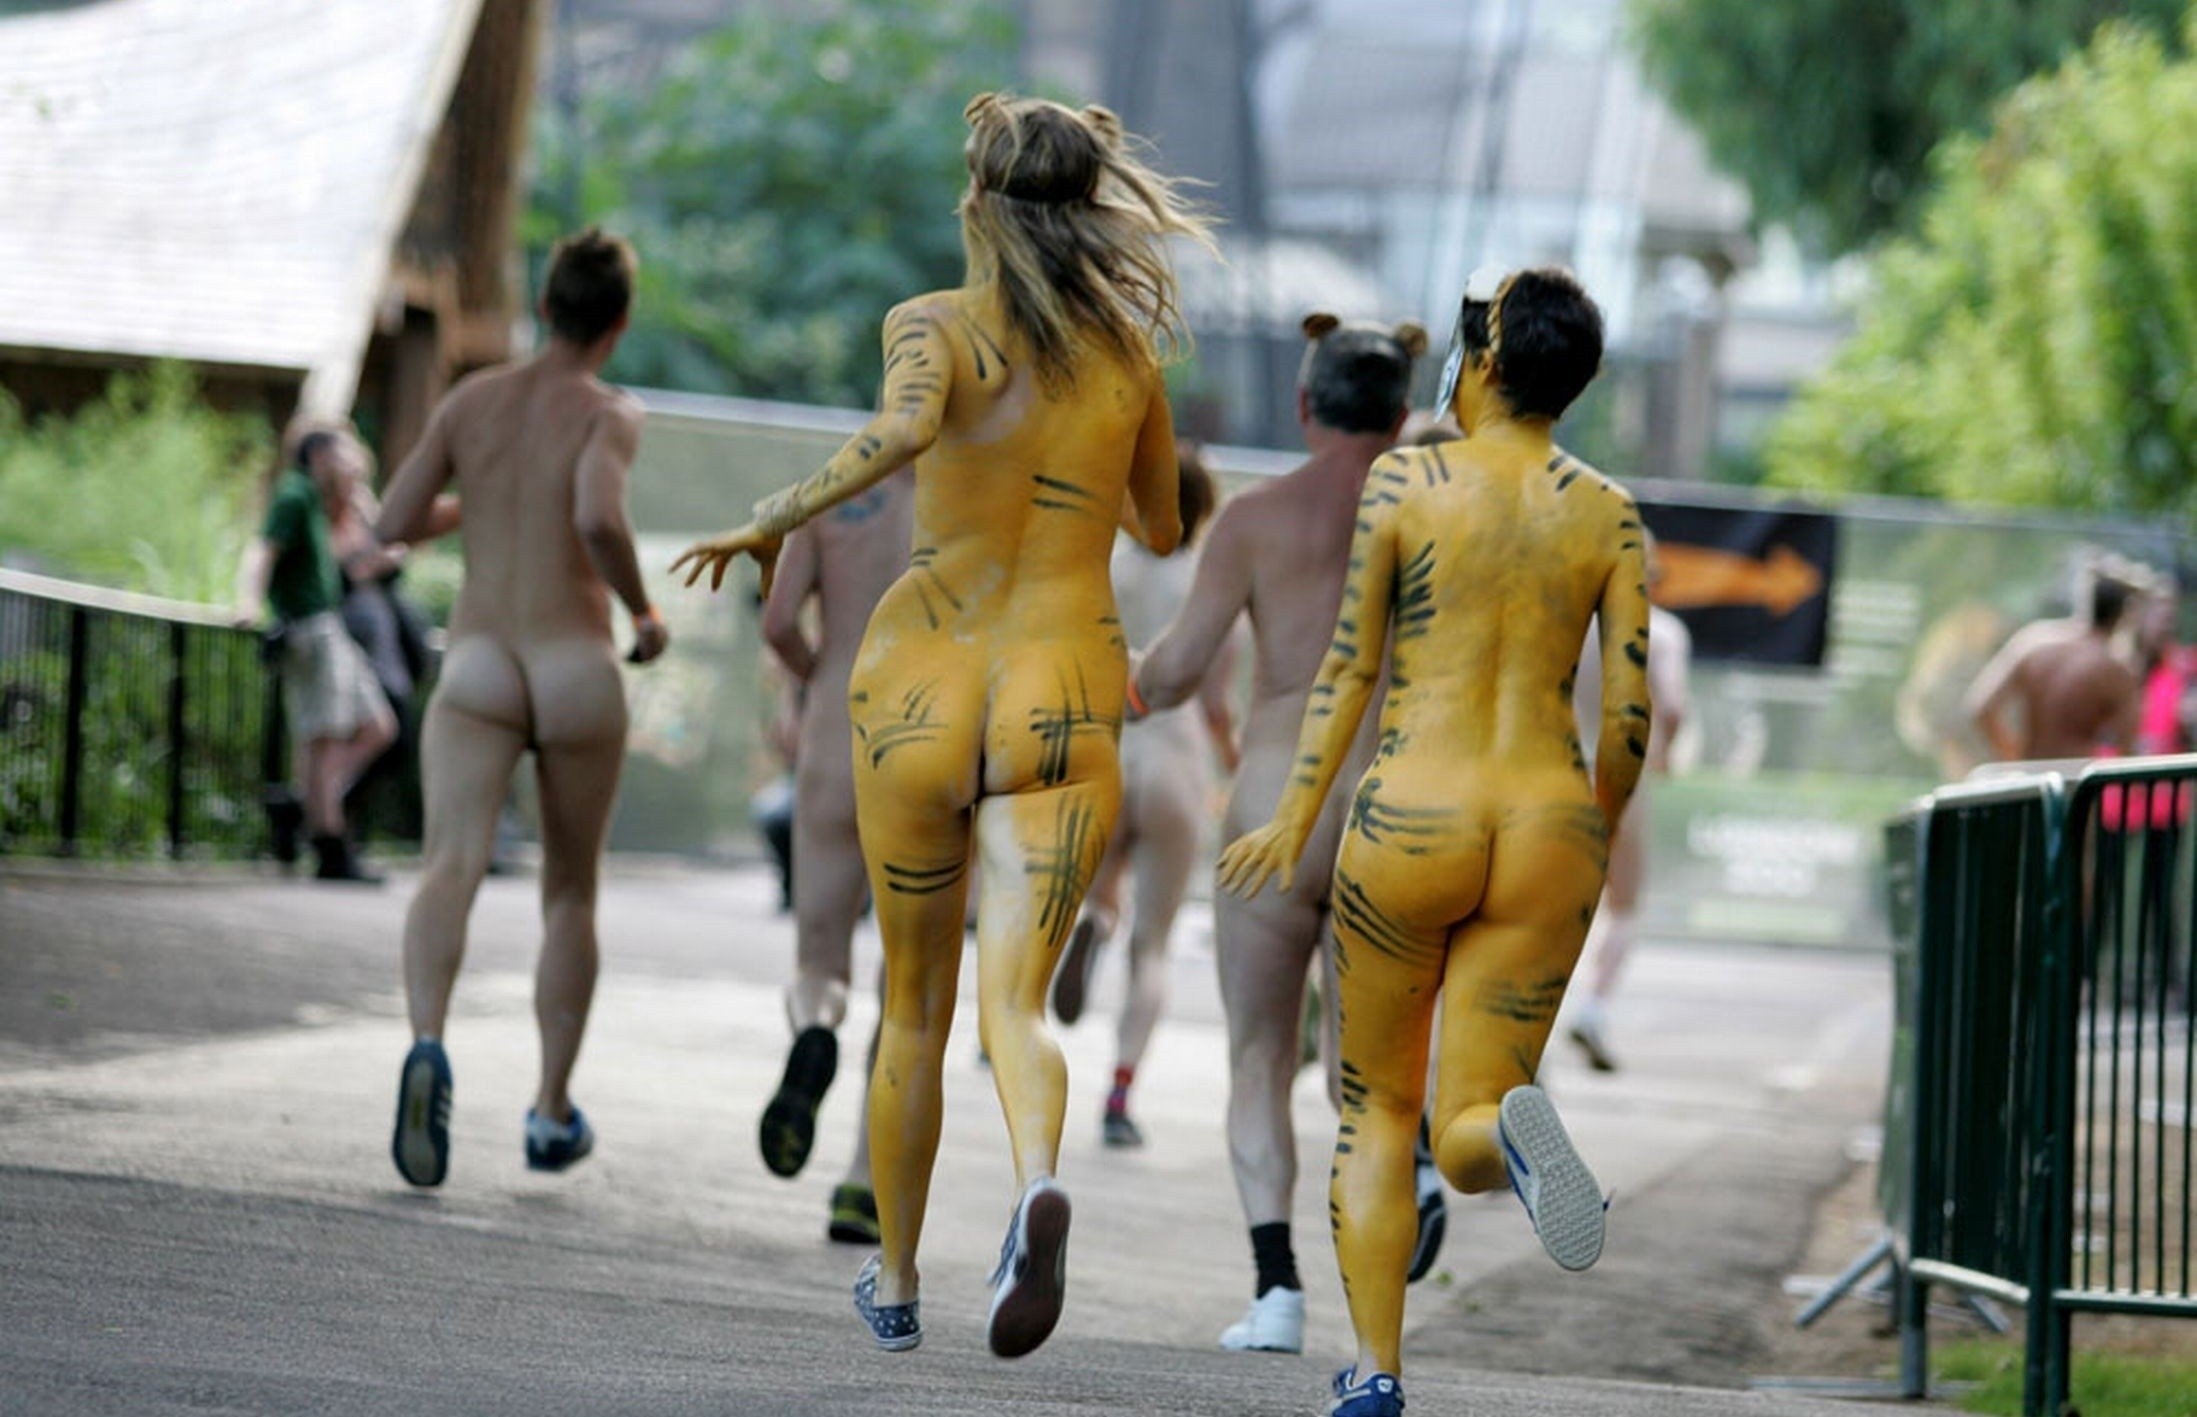 Naked women runners